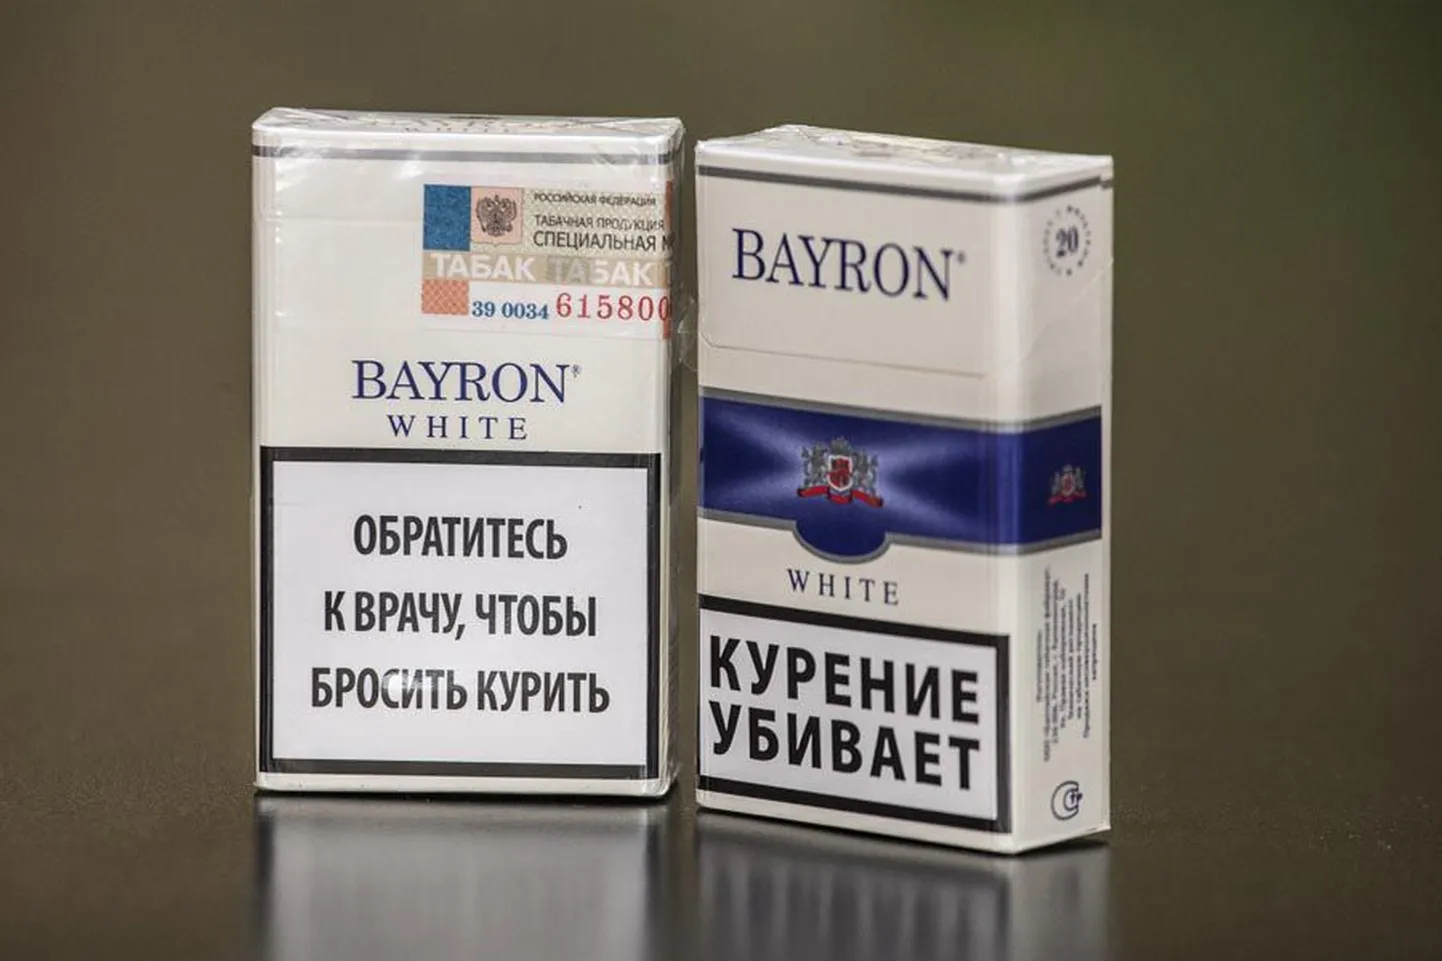 Tühja paki uuring näitab, et ligi pooled Viljandis tõmmatavad sigaretid on salasuitsud.